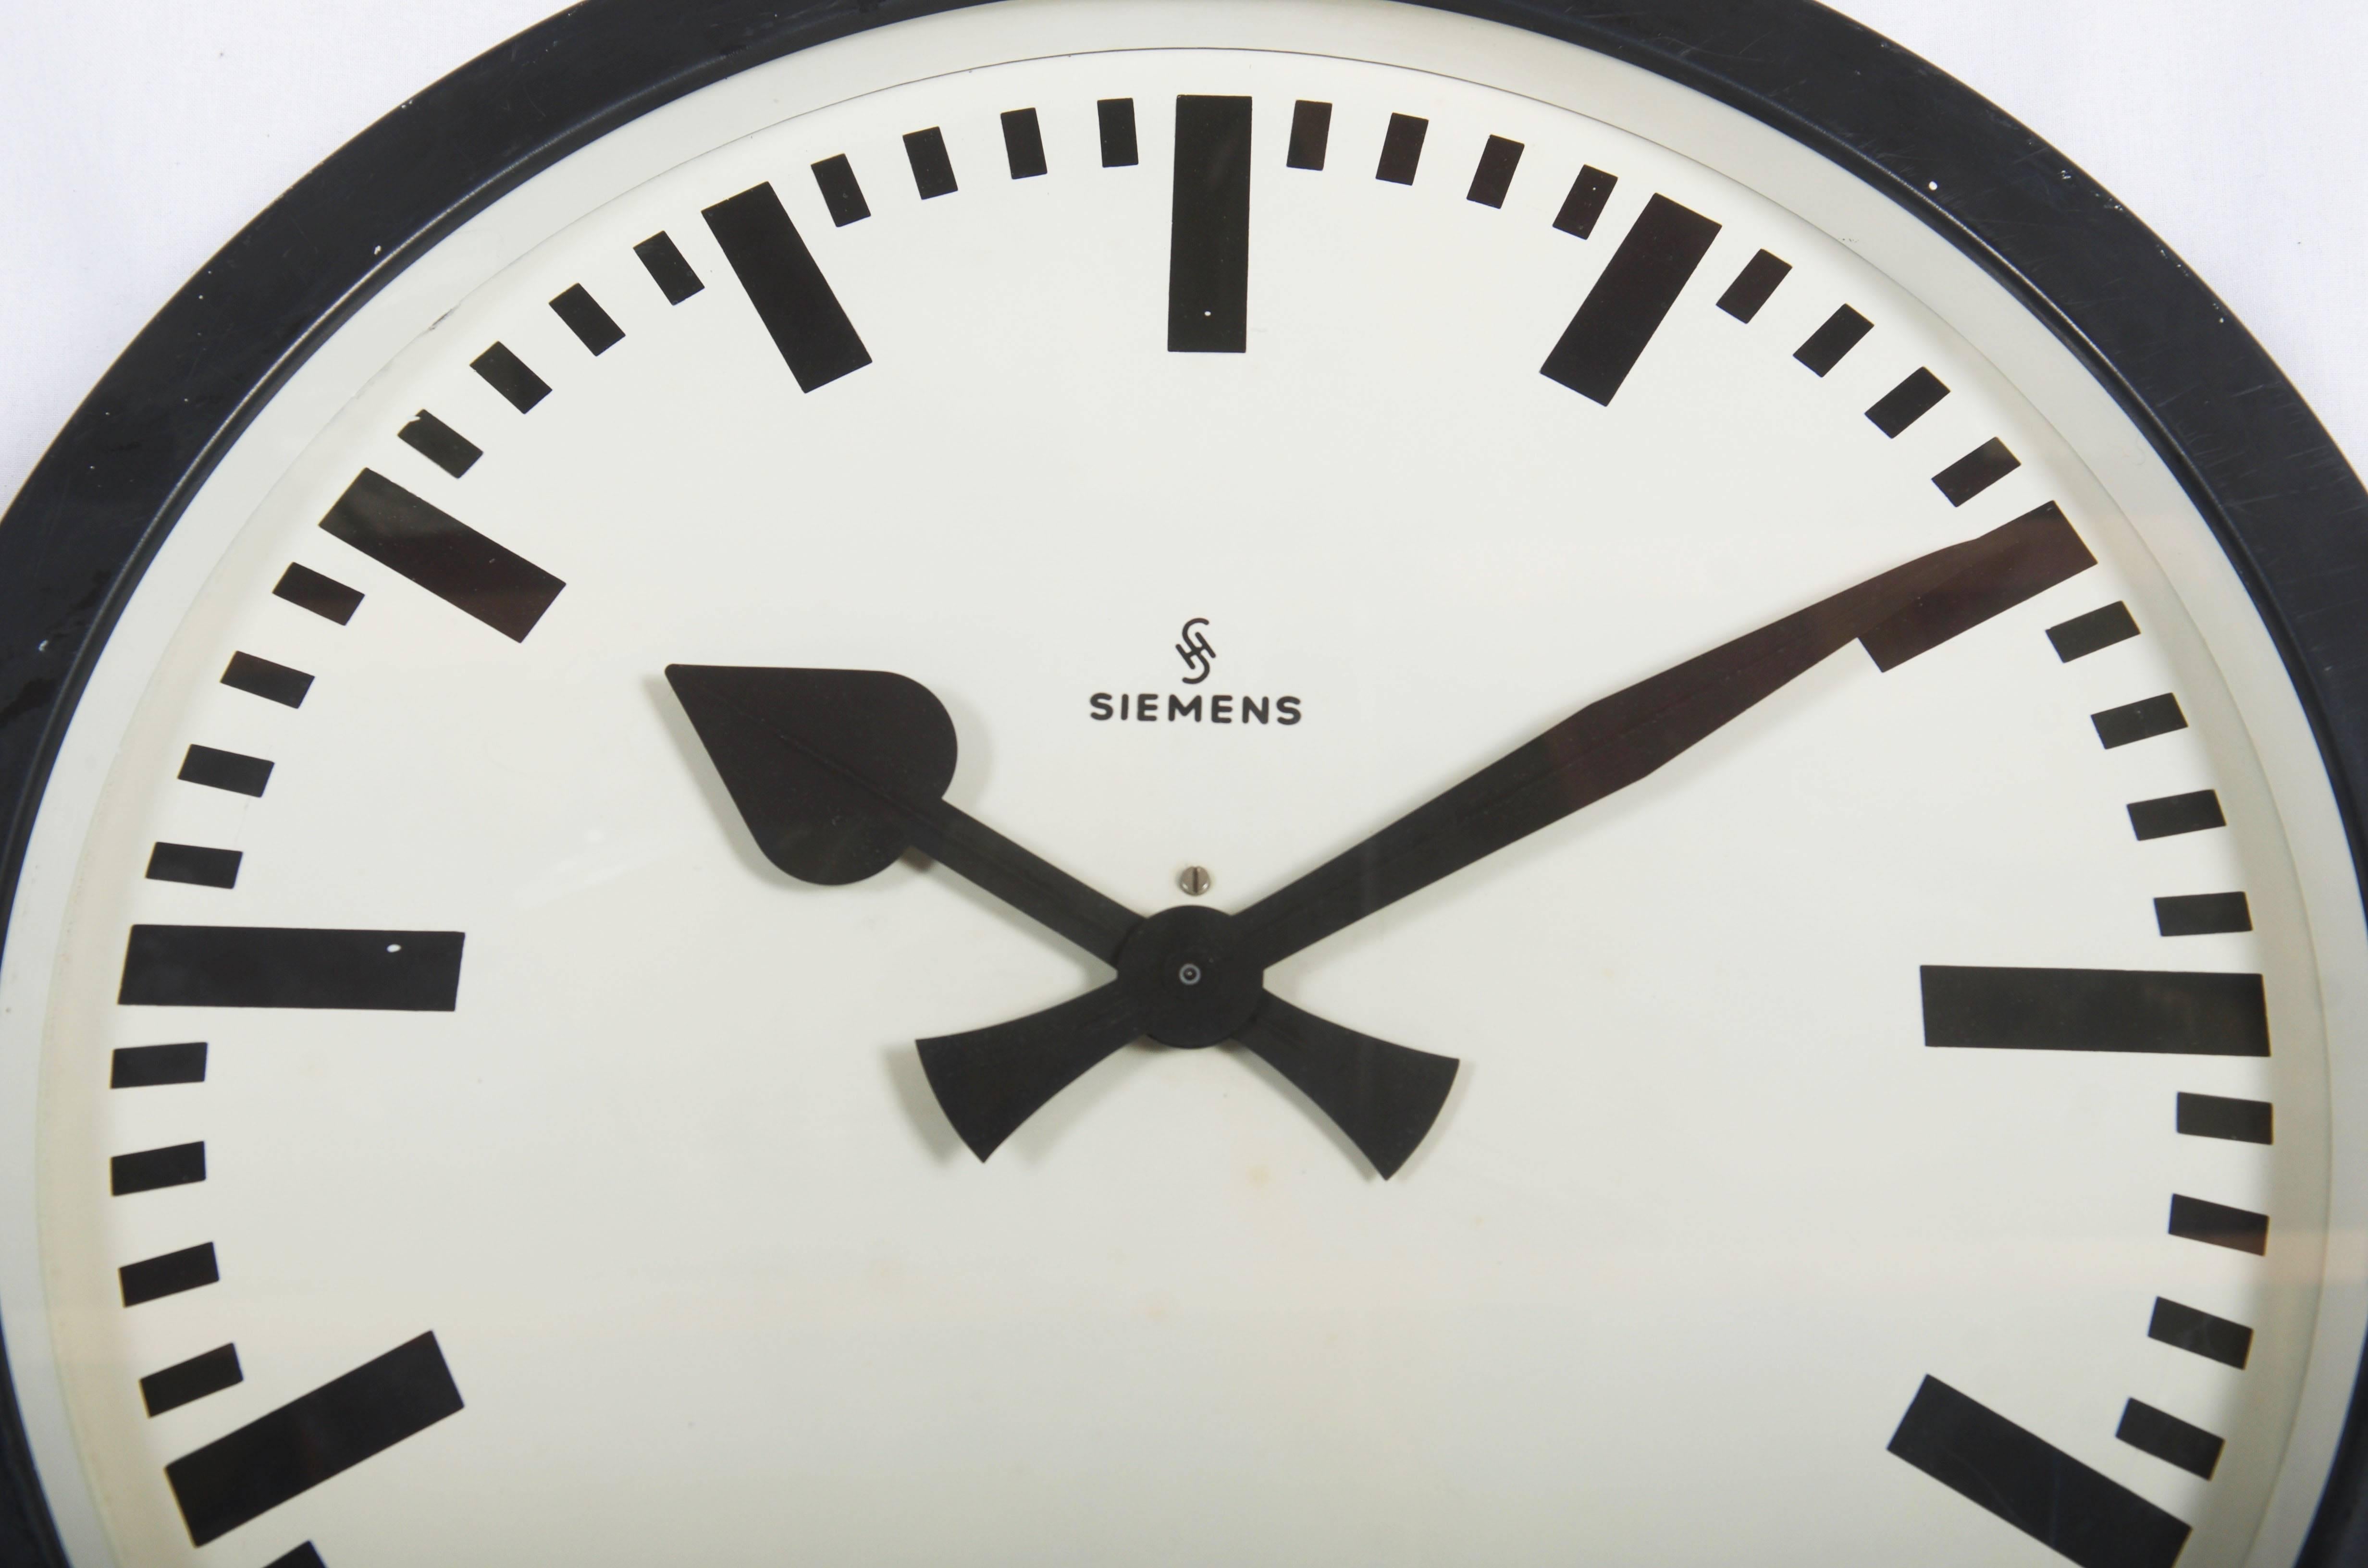 Acier peint avec façade en verre, fabriqué en Allemagne dans les années 1950.
Ancienne horloge d'esclave, elle est aujourd'hui équipée d'un mouvement moderne à quartz avec batterie. Le délai de livraison est d'environ 2 semaines.
 